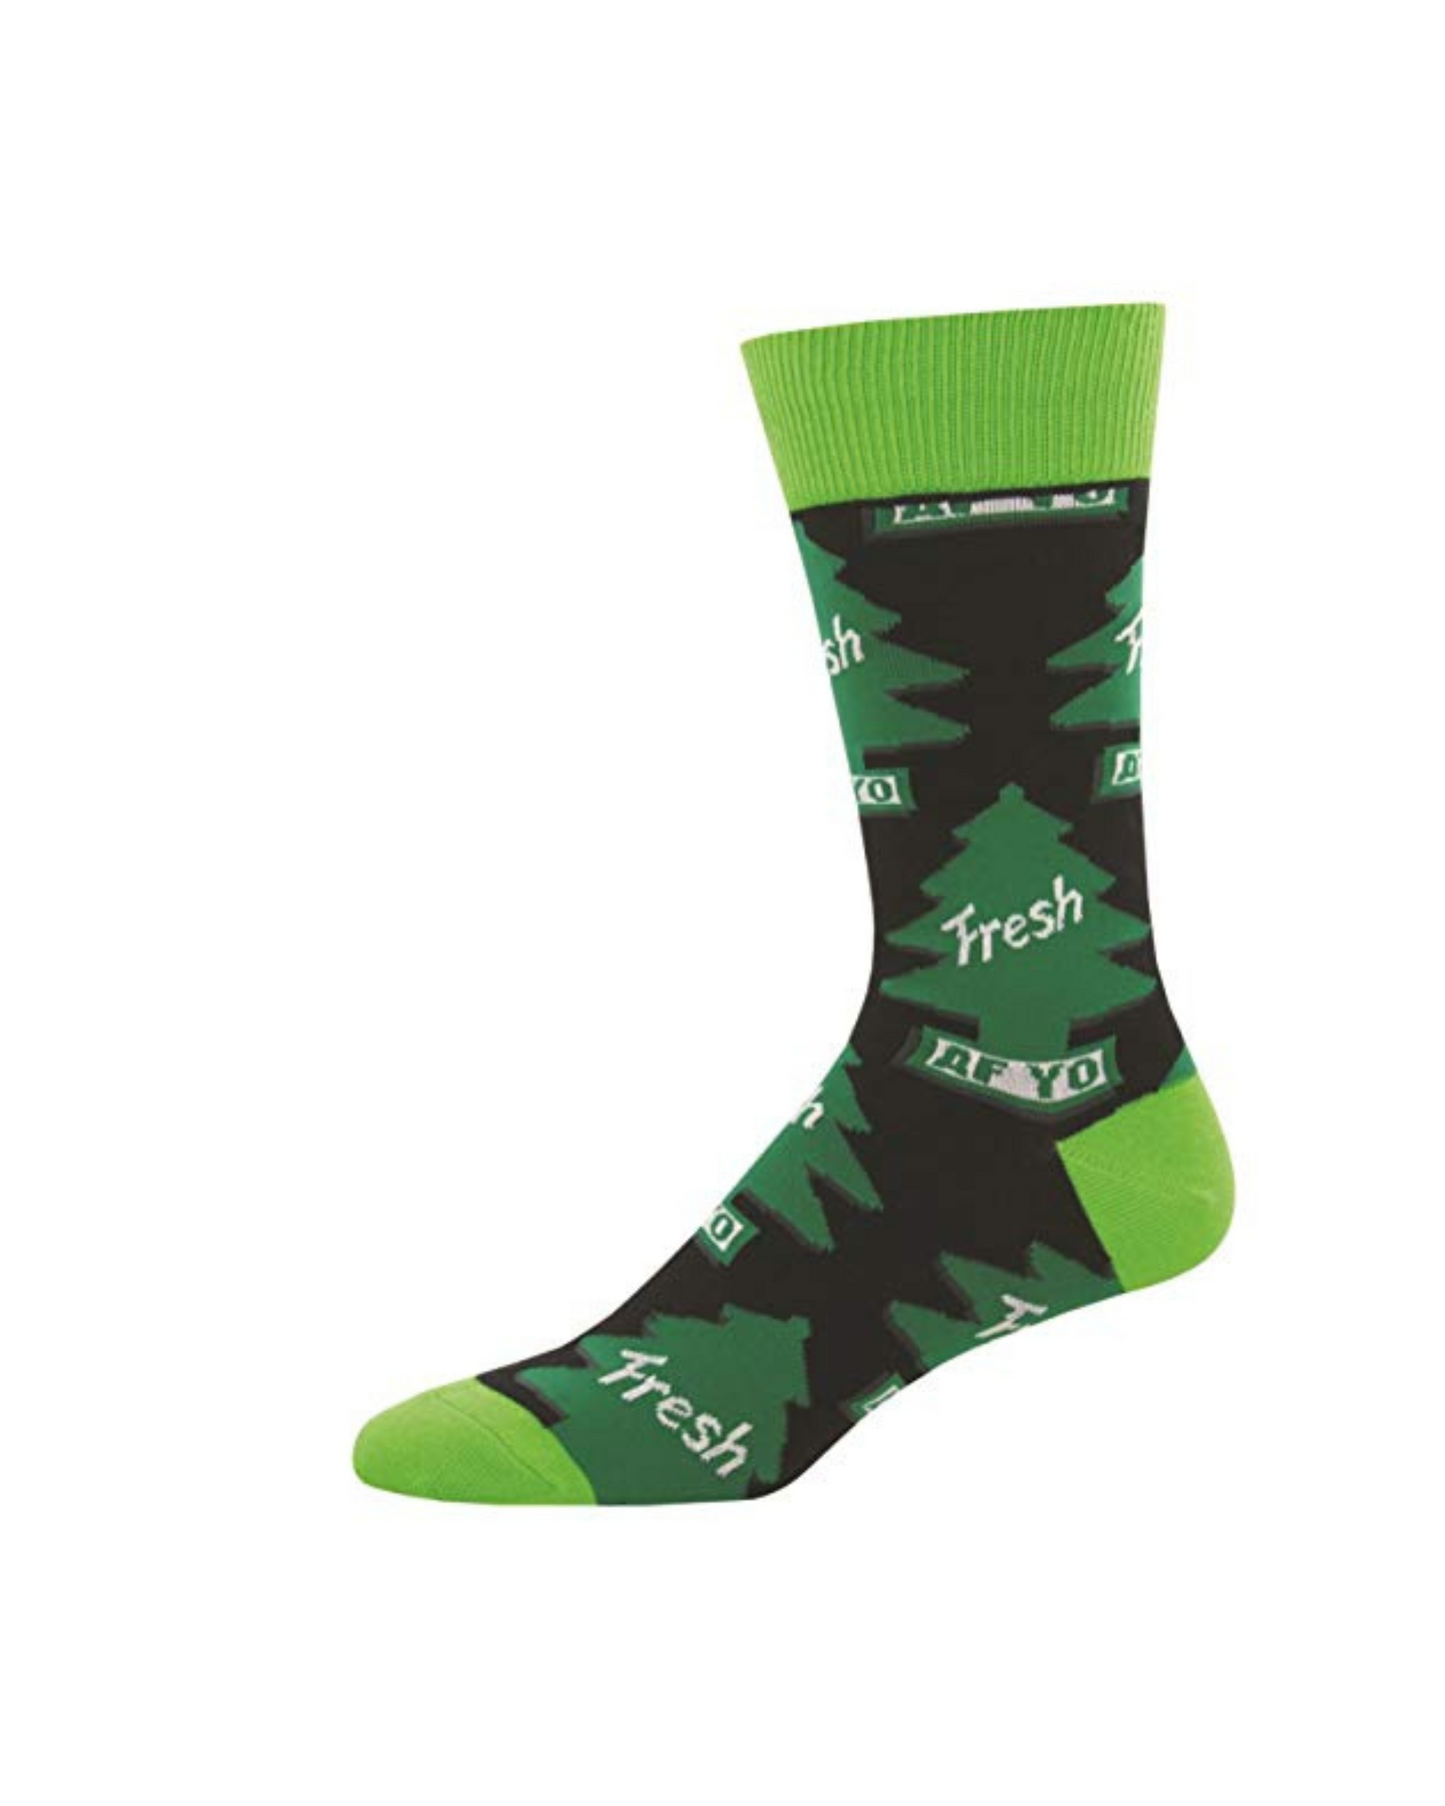 Socksmith Freshen Up Socks - - 11_76490cf1-643c-4f60-a632-35ab89b35a81